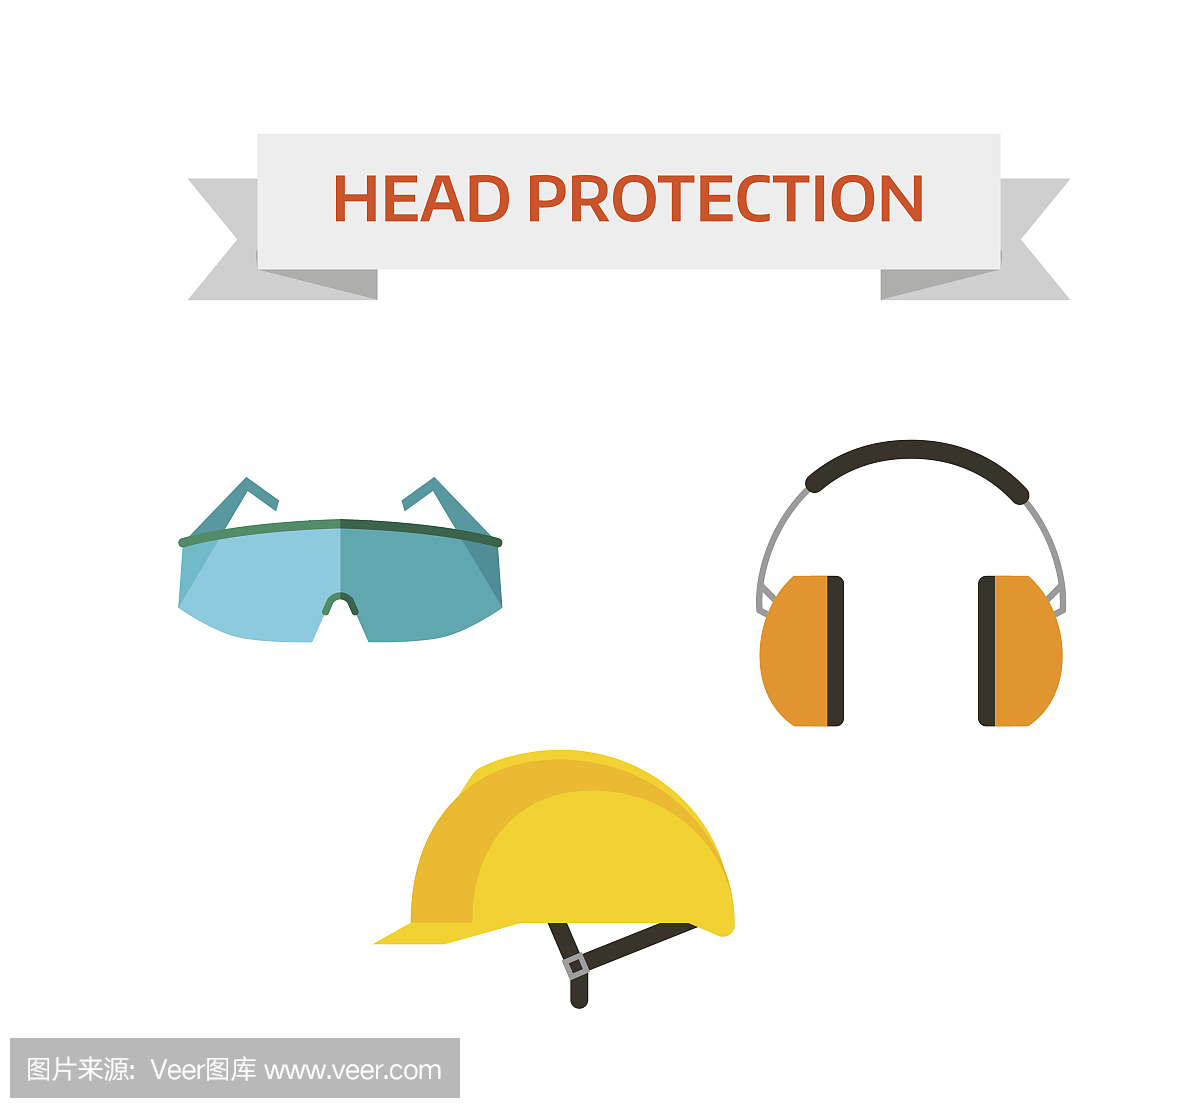 工业防护工作头保护包括硬帽,安全眼镜